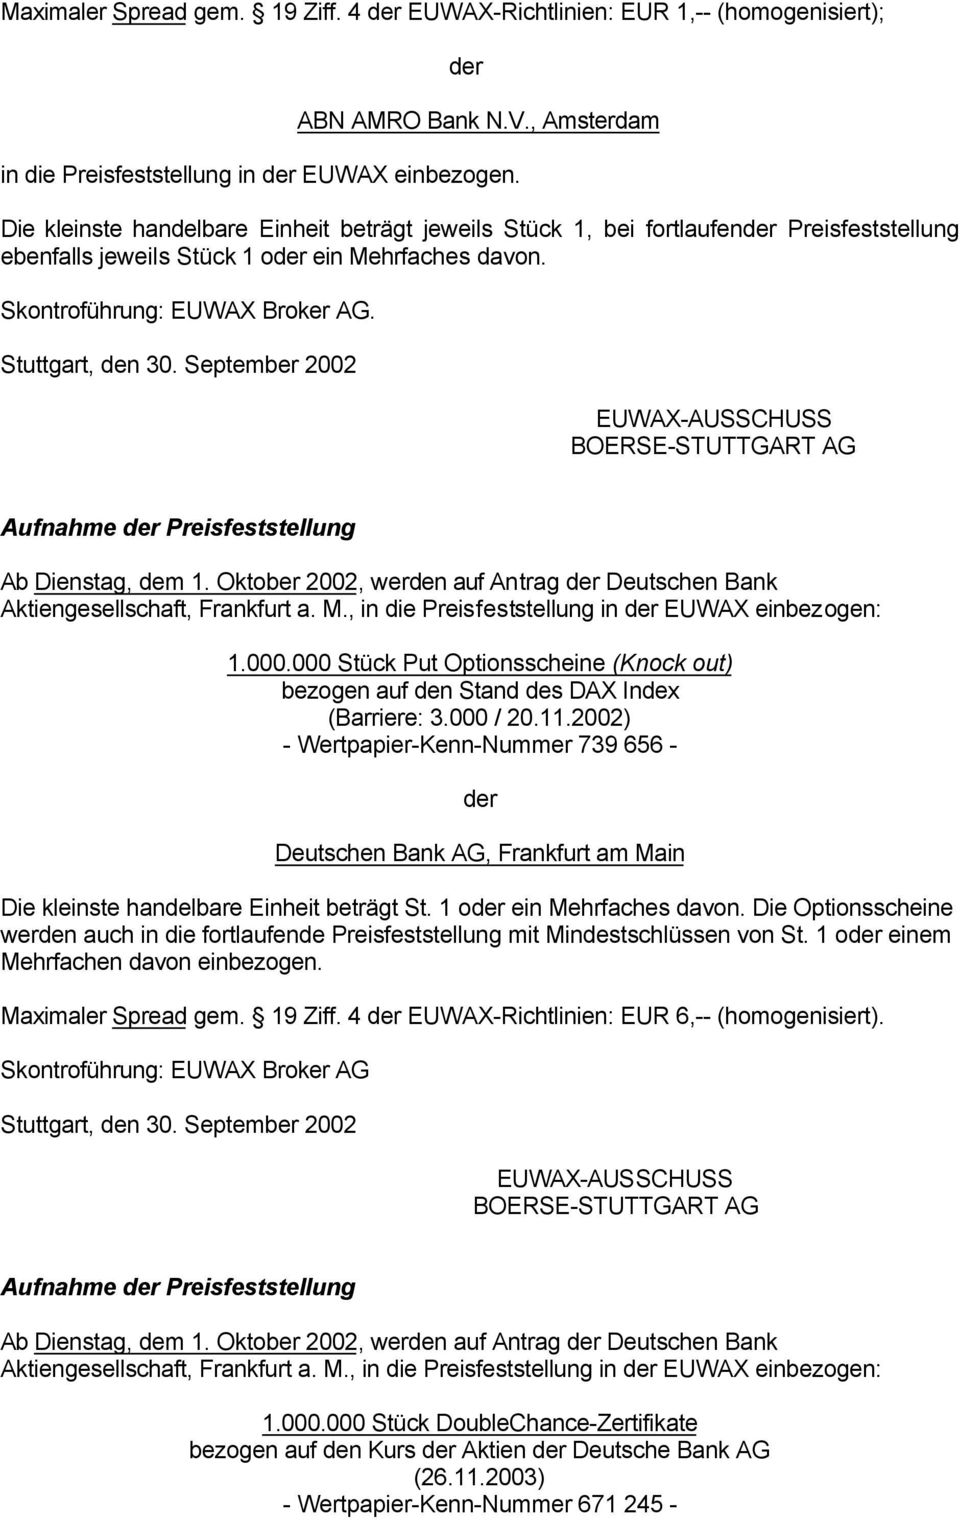 Aufnahme Preisfeststellung Ab Dienstag, dem 1. Oktober 2002, werden auf Antrag Deutschen Bank Aktiengesellschaft, Frankfurt a. M., in die Preisfeststellung in EUWAX einbezogen: 1.000.